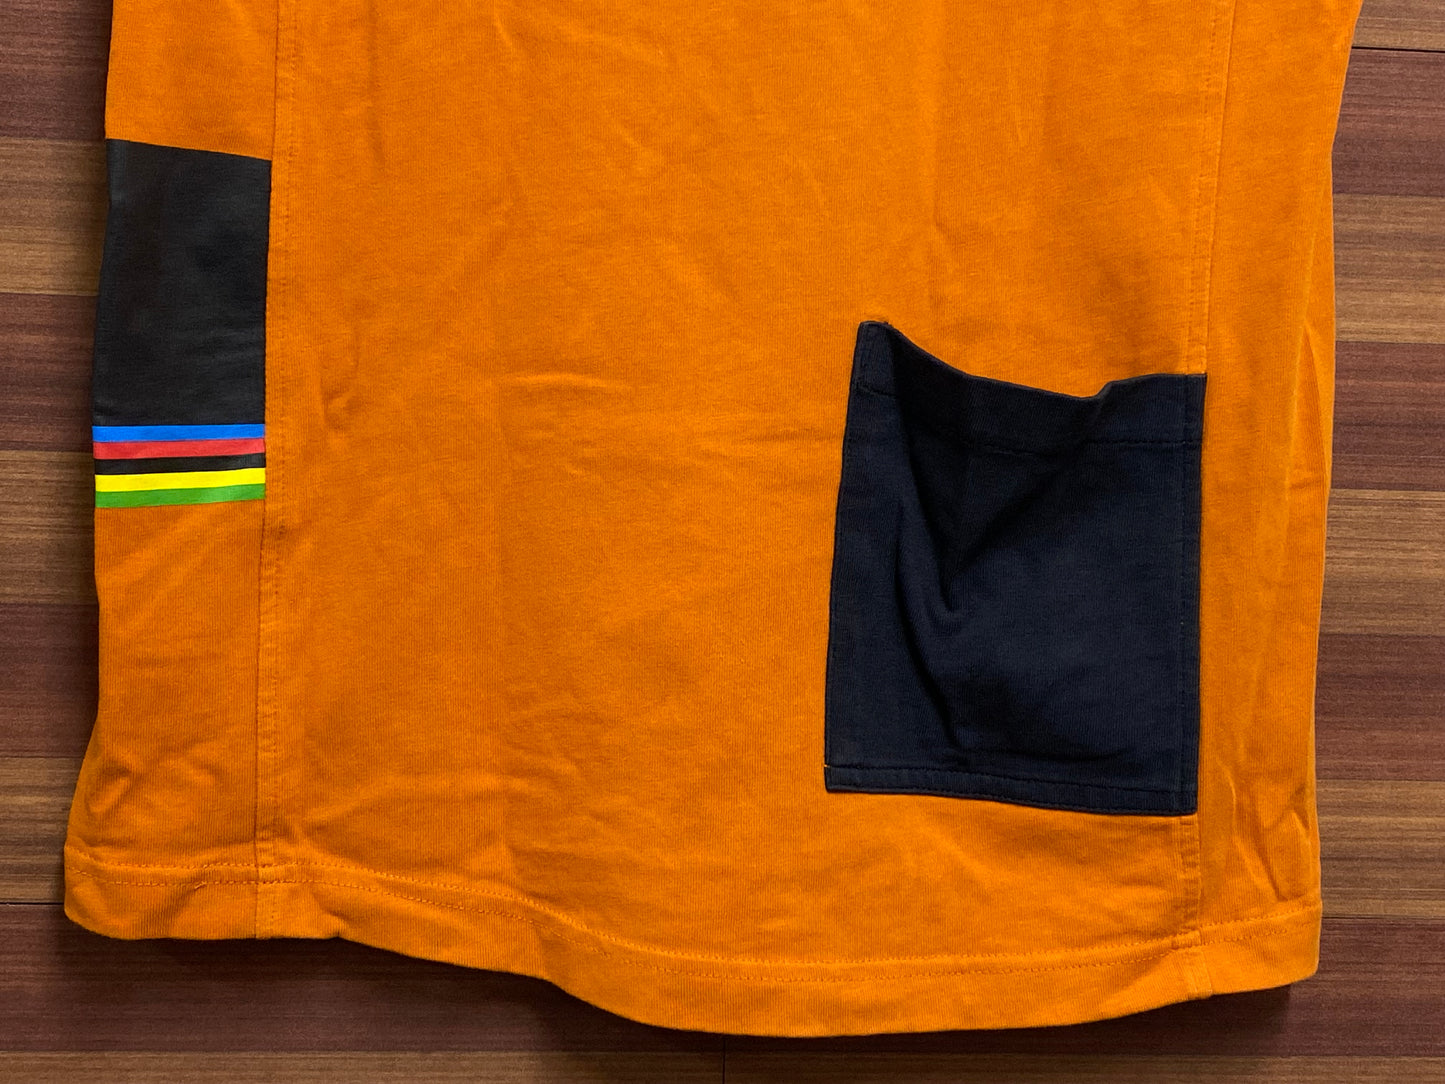 GX161 ラファ Rapha Tシャツ 5 DECADES T-SHIRT 半袖 オレンジ XS